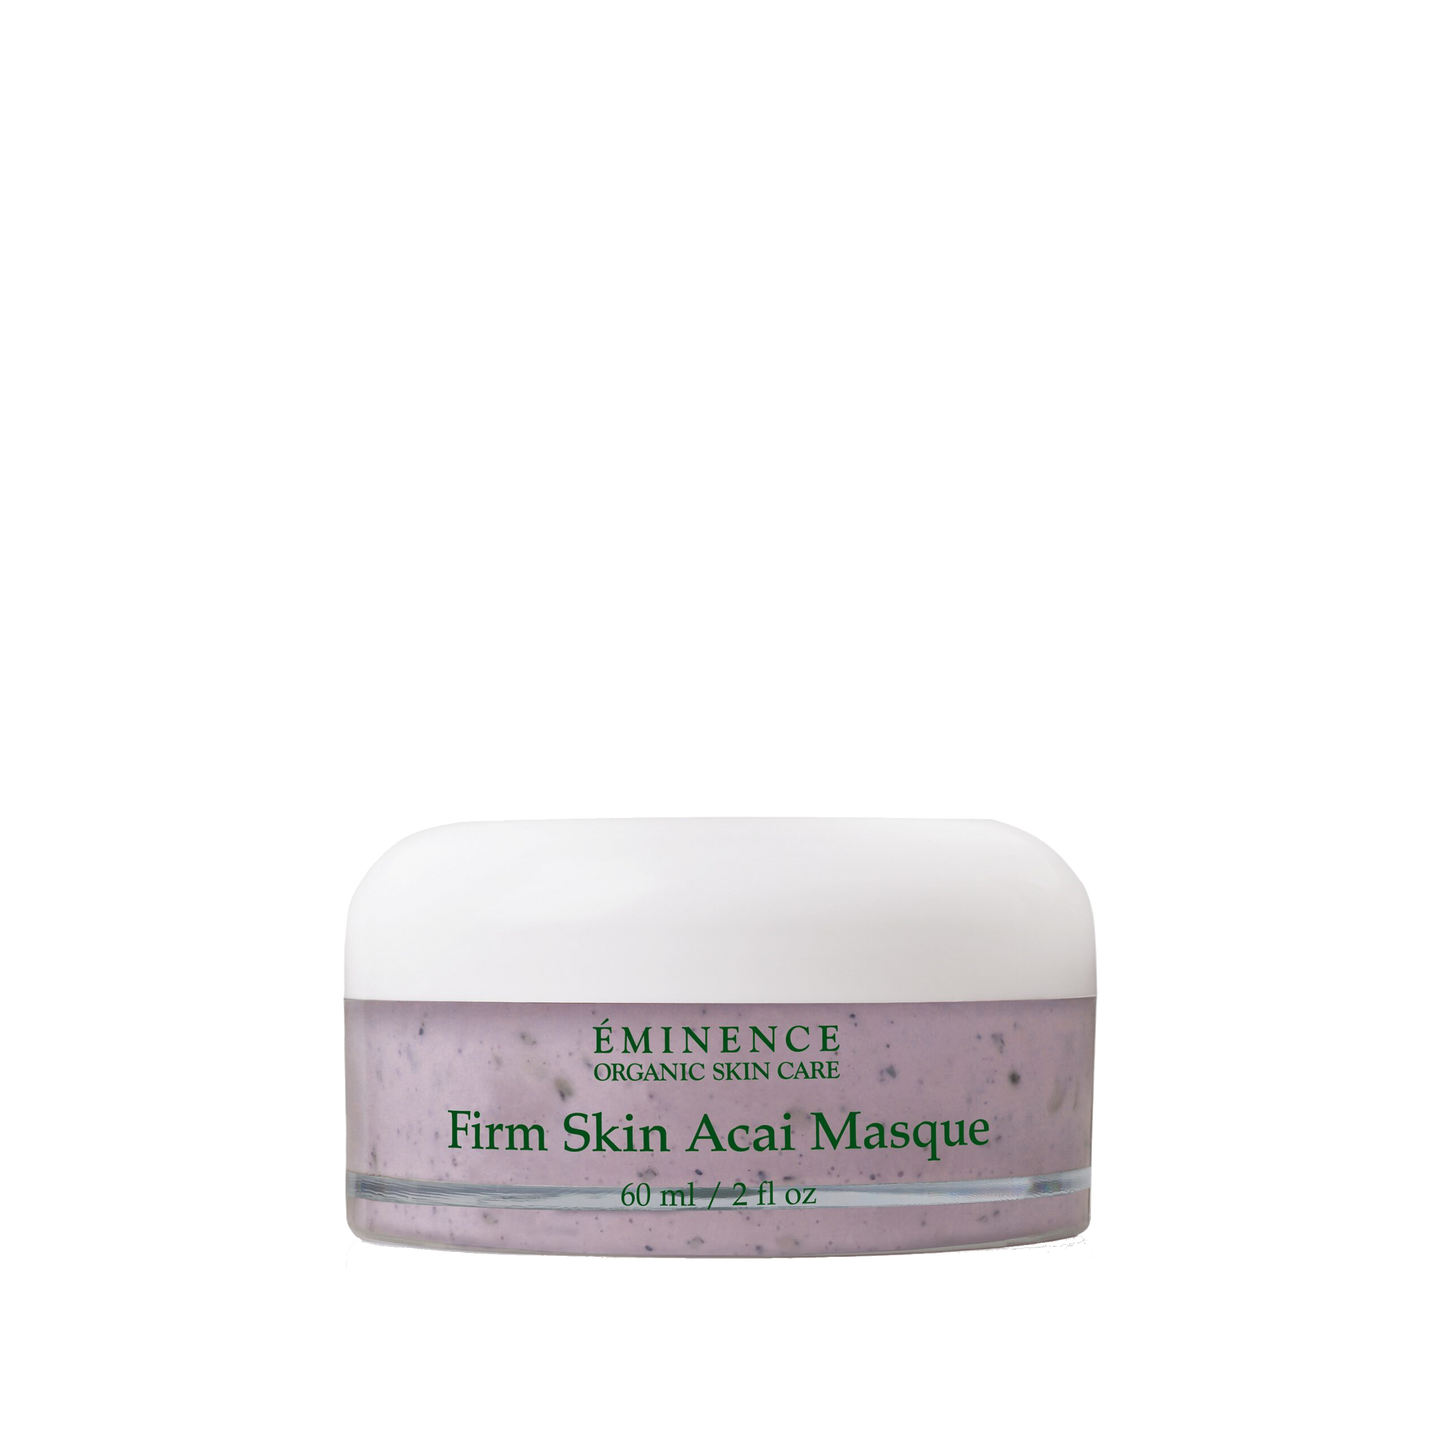 Firm Skin Acai Masque ingrediënten